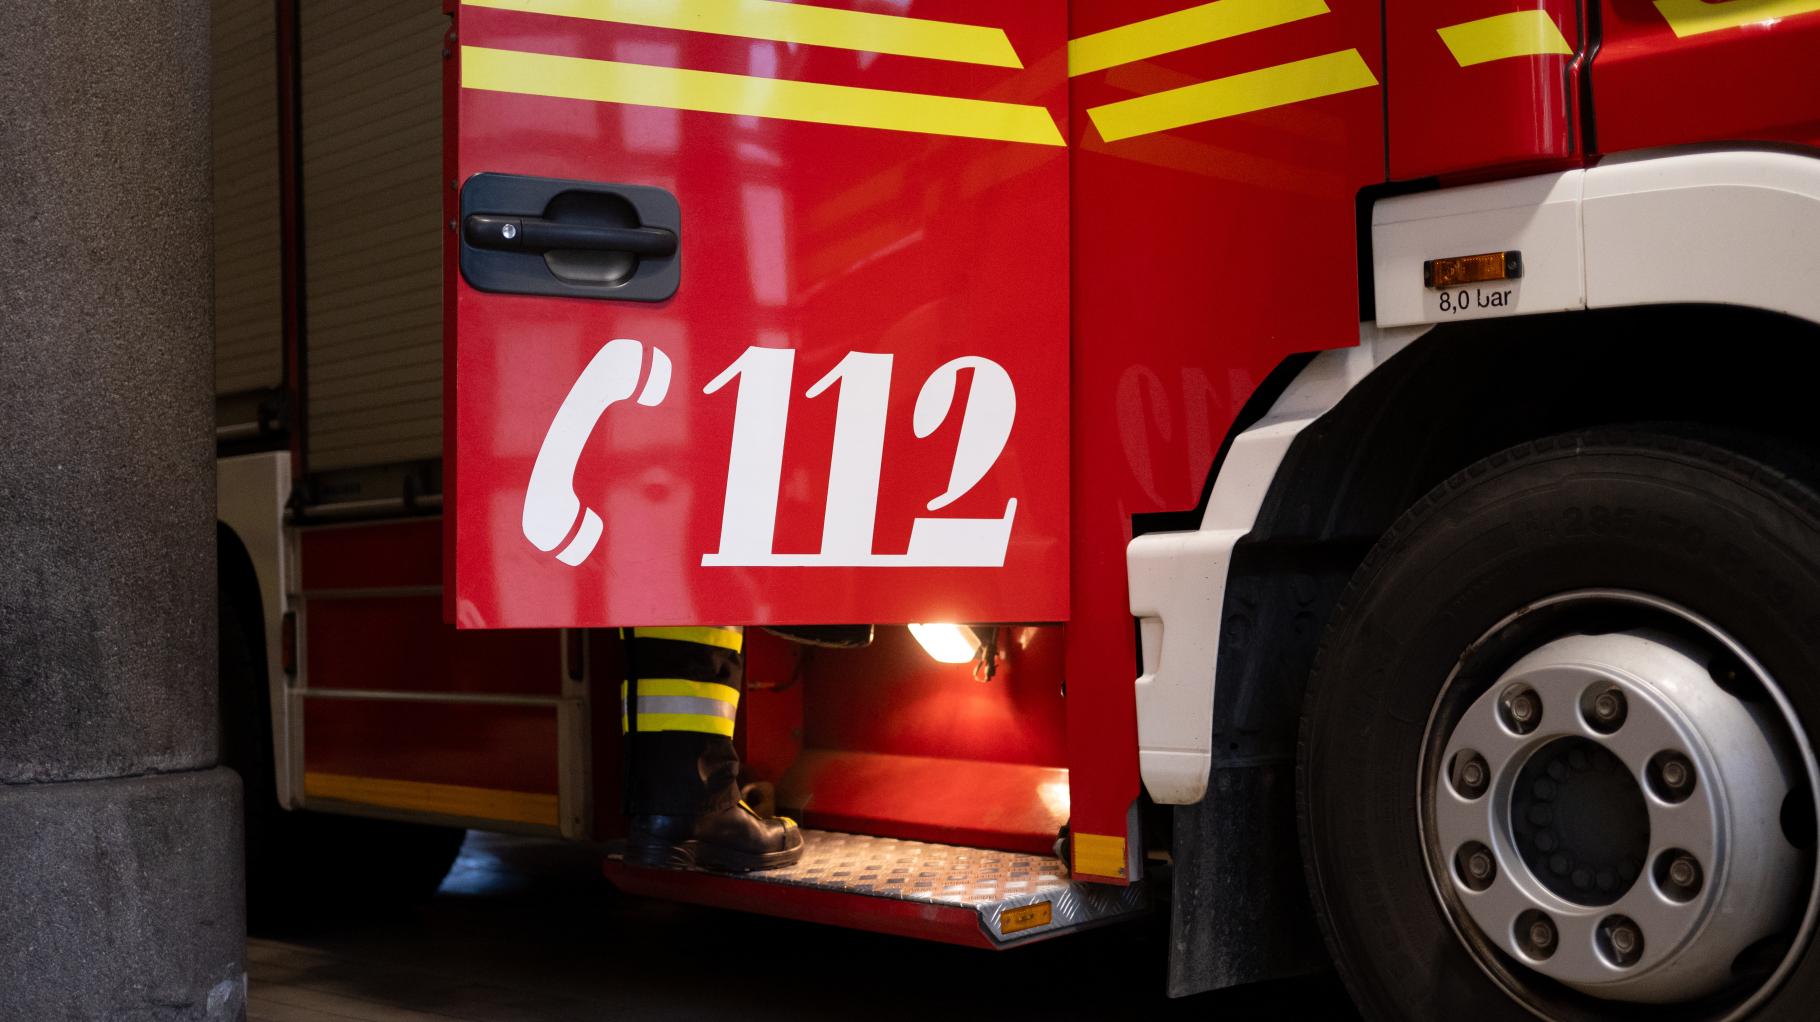 Erneut Fahrzeug in Rostock angezündet: Feuer an Hinterrad von Transporter gelegt